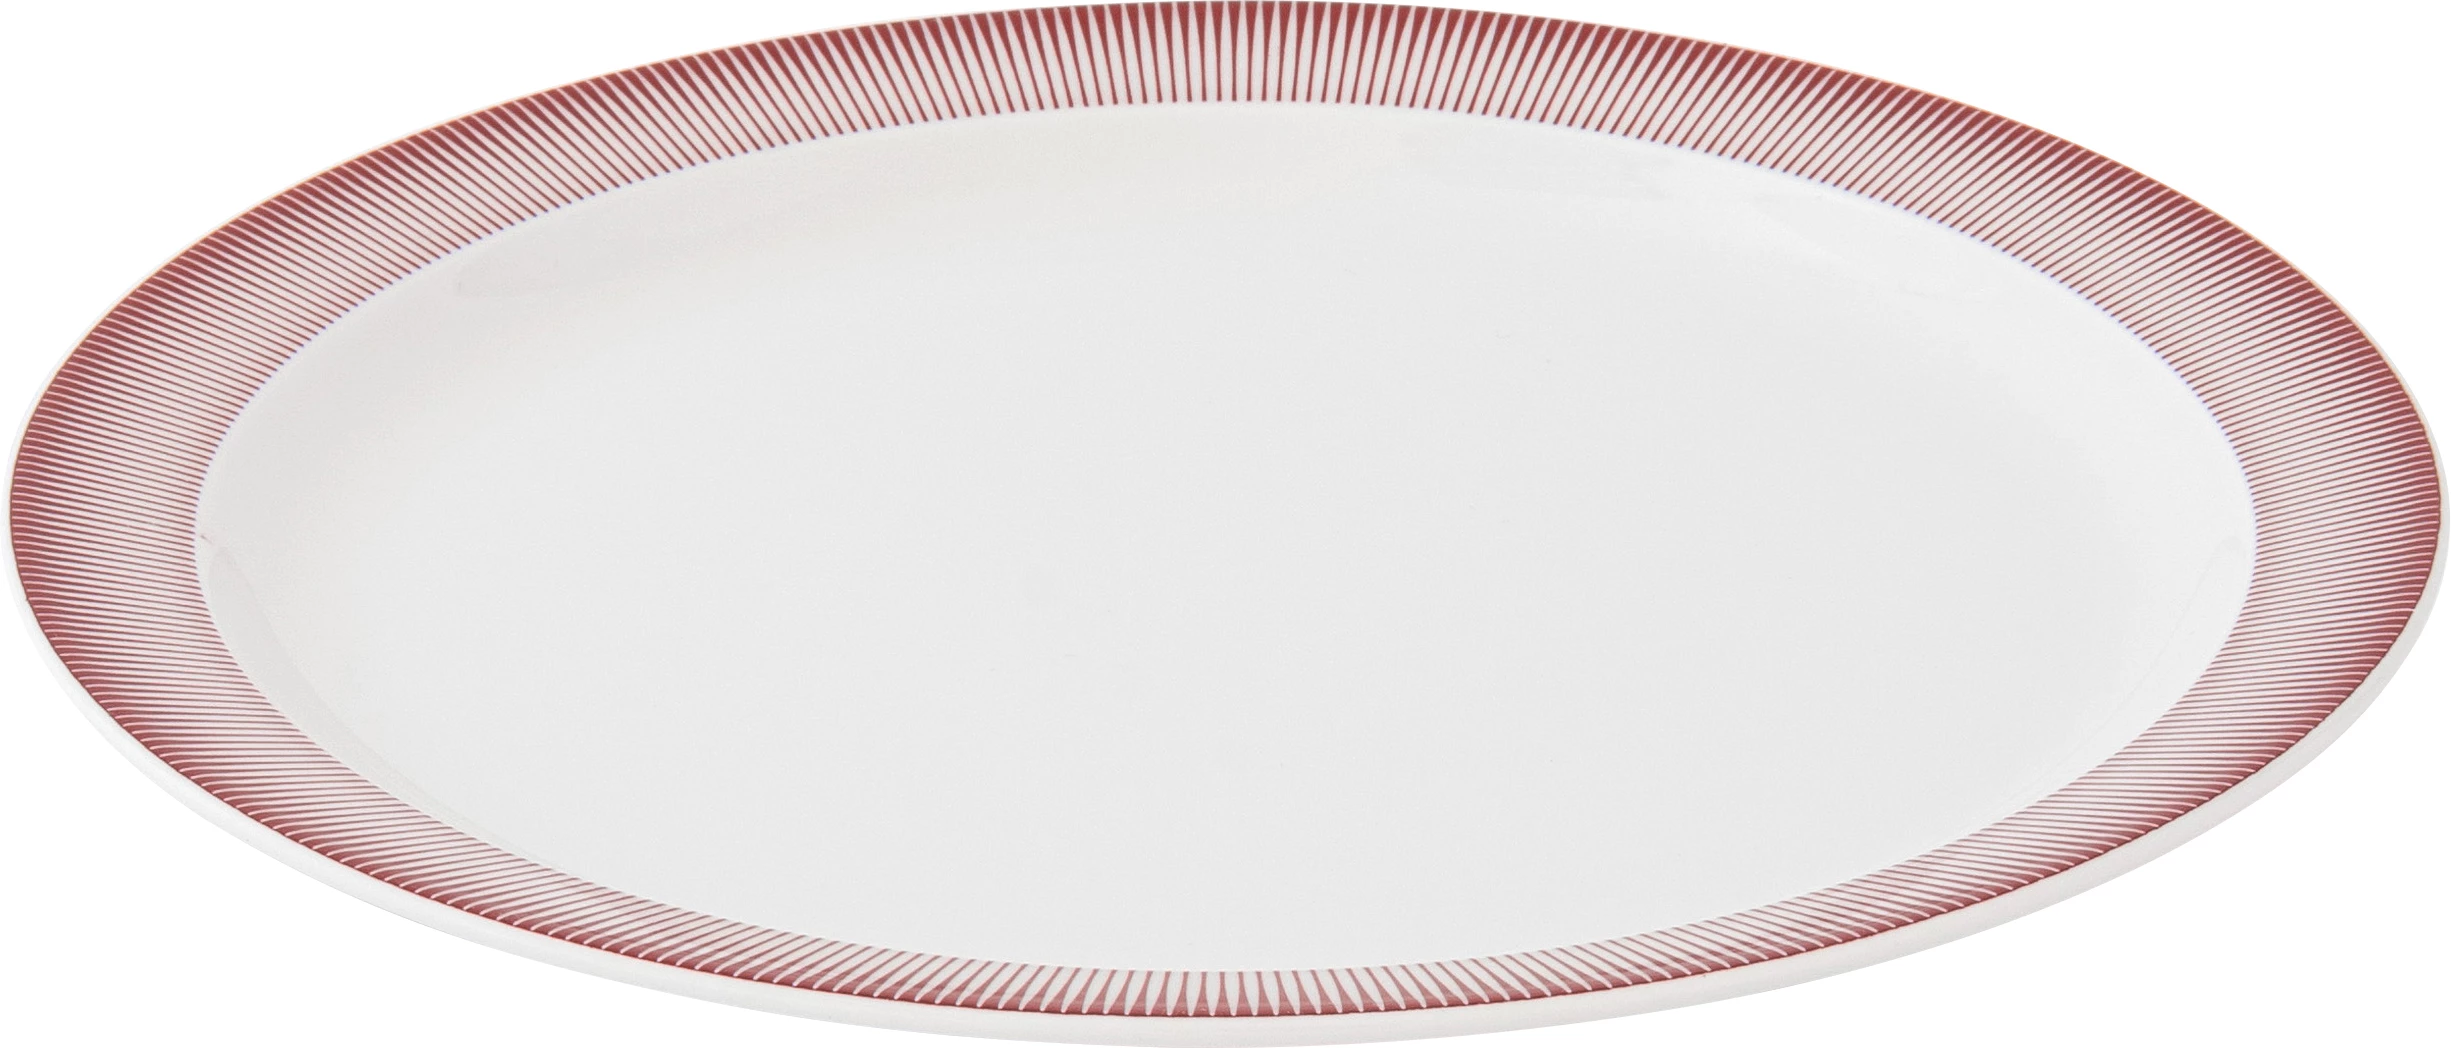 Figgjo Wav tallerken, flad, rød, ø26,5 cm